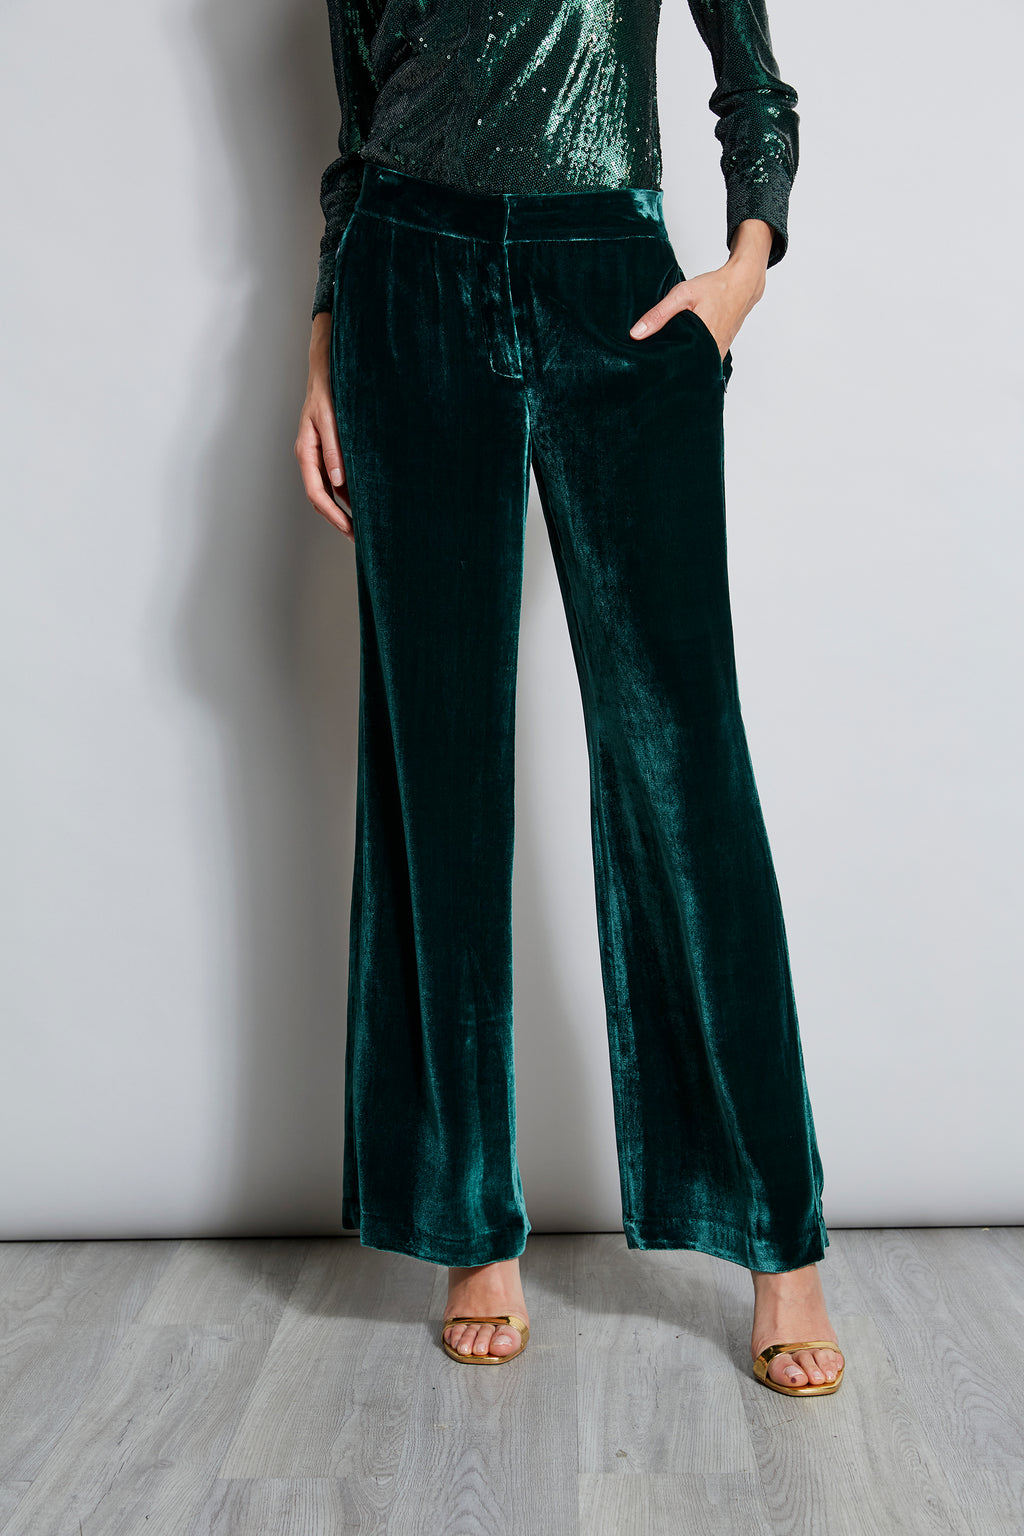 The Elegant Straight Leg Velvet Pants - Women's Green Velvet High Waisted  Slim Pants - Dark Green - Bottoms, RIHOAS